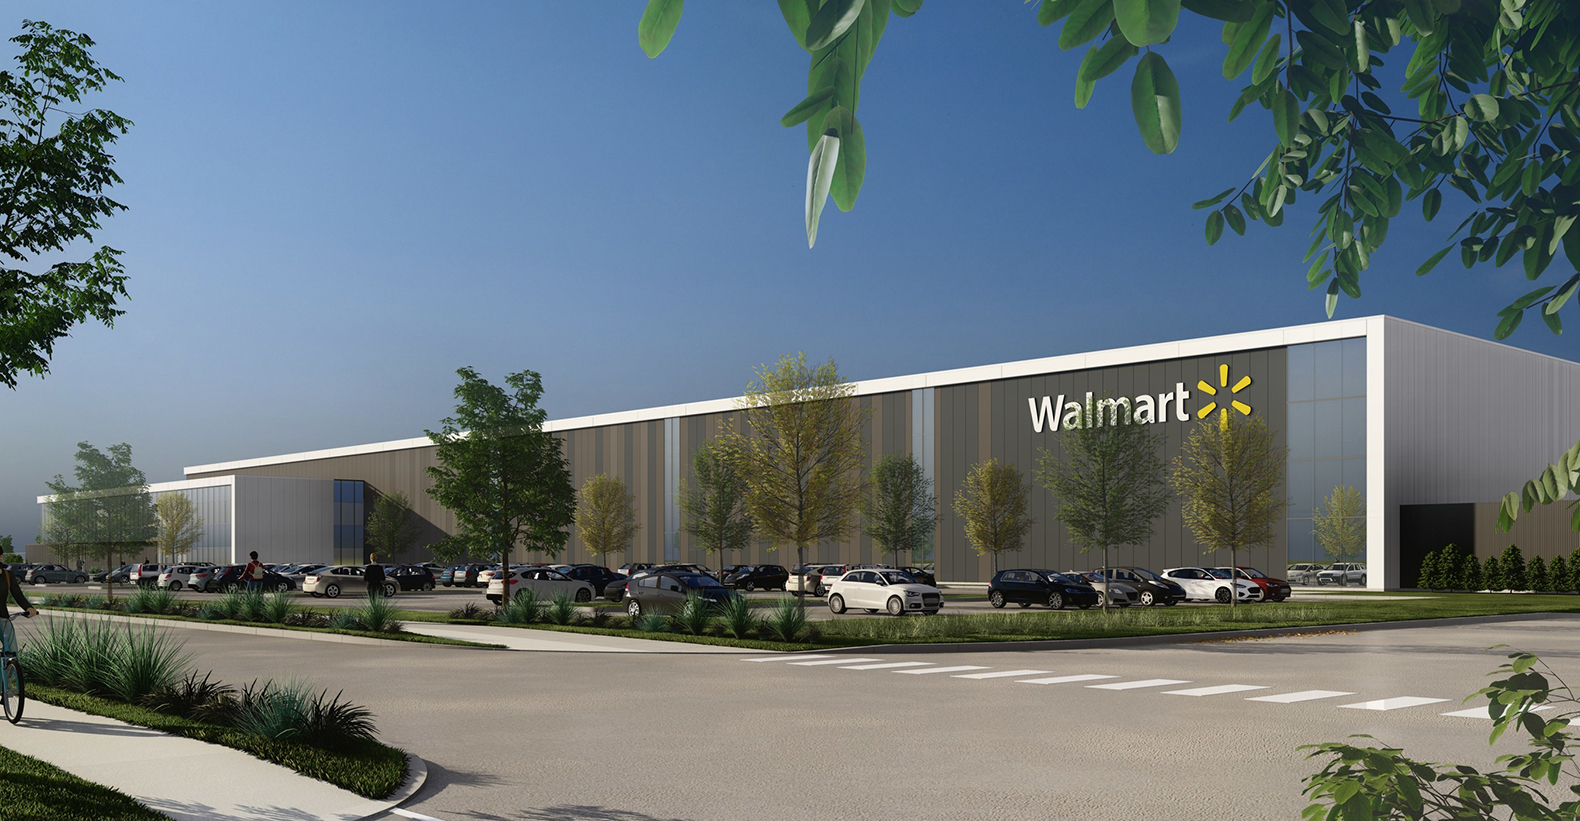 Walmart Canada investing $118 million to build new fulfillment centre in  Calgary area